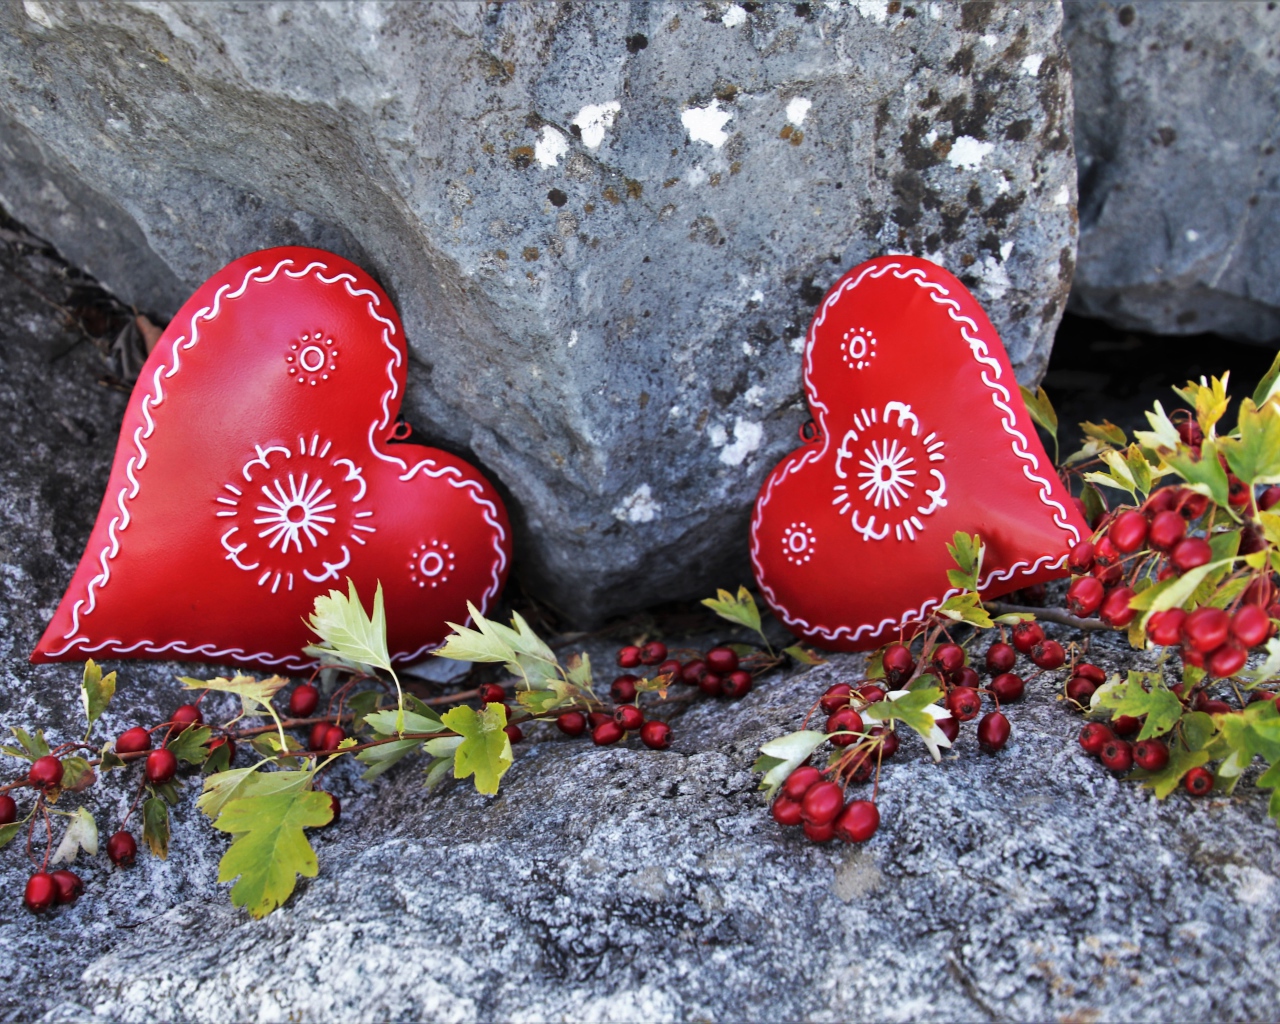 Два сердца лежат у камня с красными ягодами